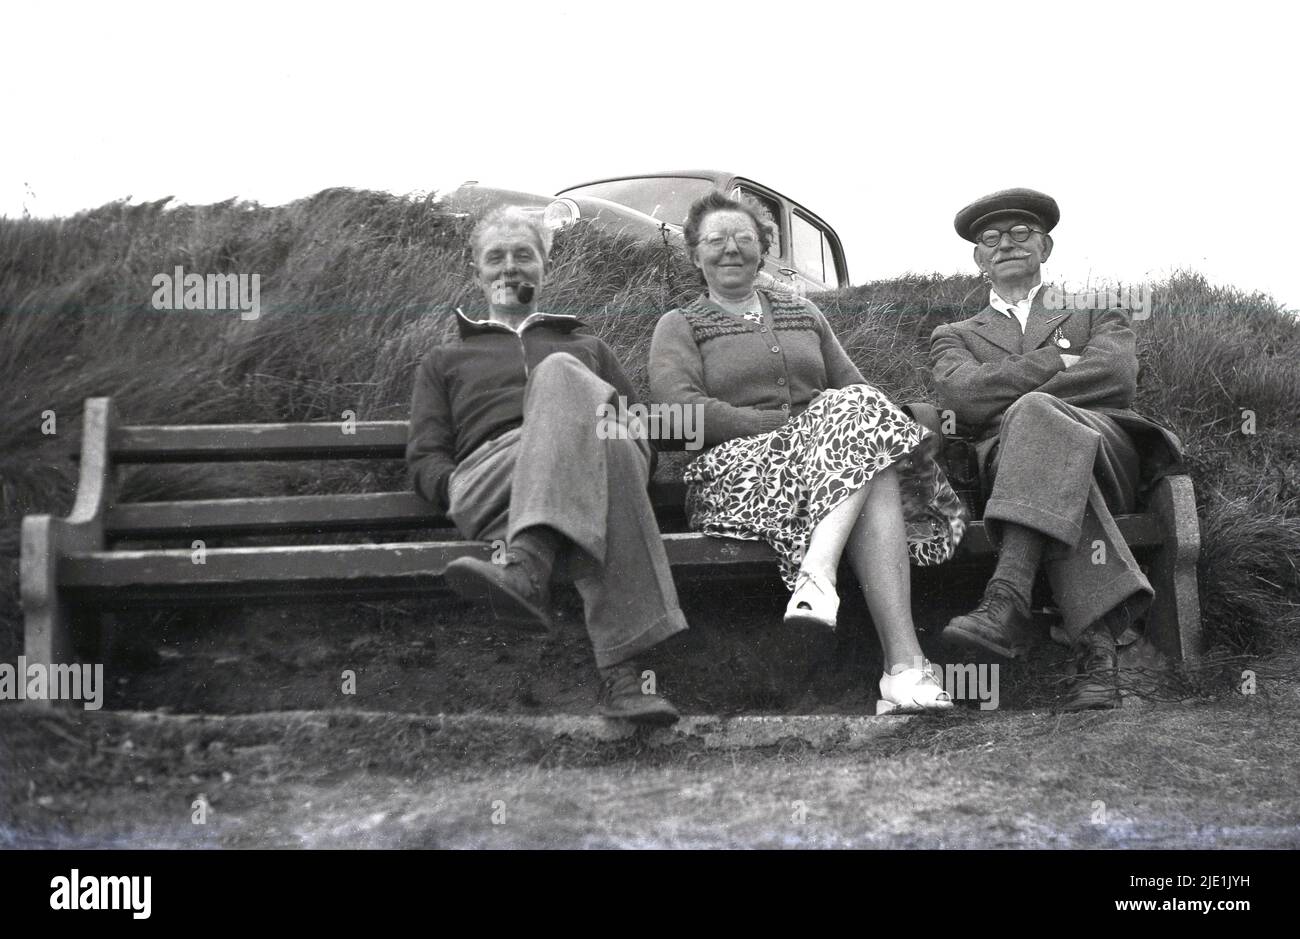 1940s, historisch, ein Tag draußen, sitzt auf einer Bank an der Küste, England, Großbritannien, die Männer auf der linken Seite der Dame raucht eine Pfeife, während der Herr auf der rechten Seite mit dem Schnurrbart trägt eine Stoffkappe und seine Armeemedaillen auf seiner Jacke. Stockfoto